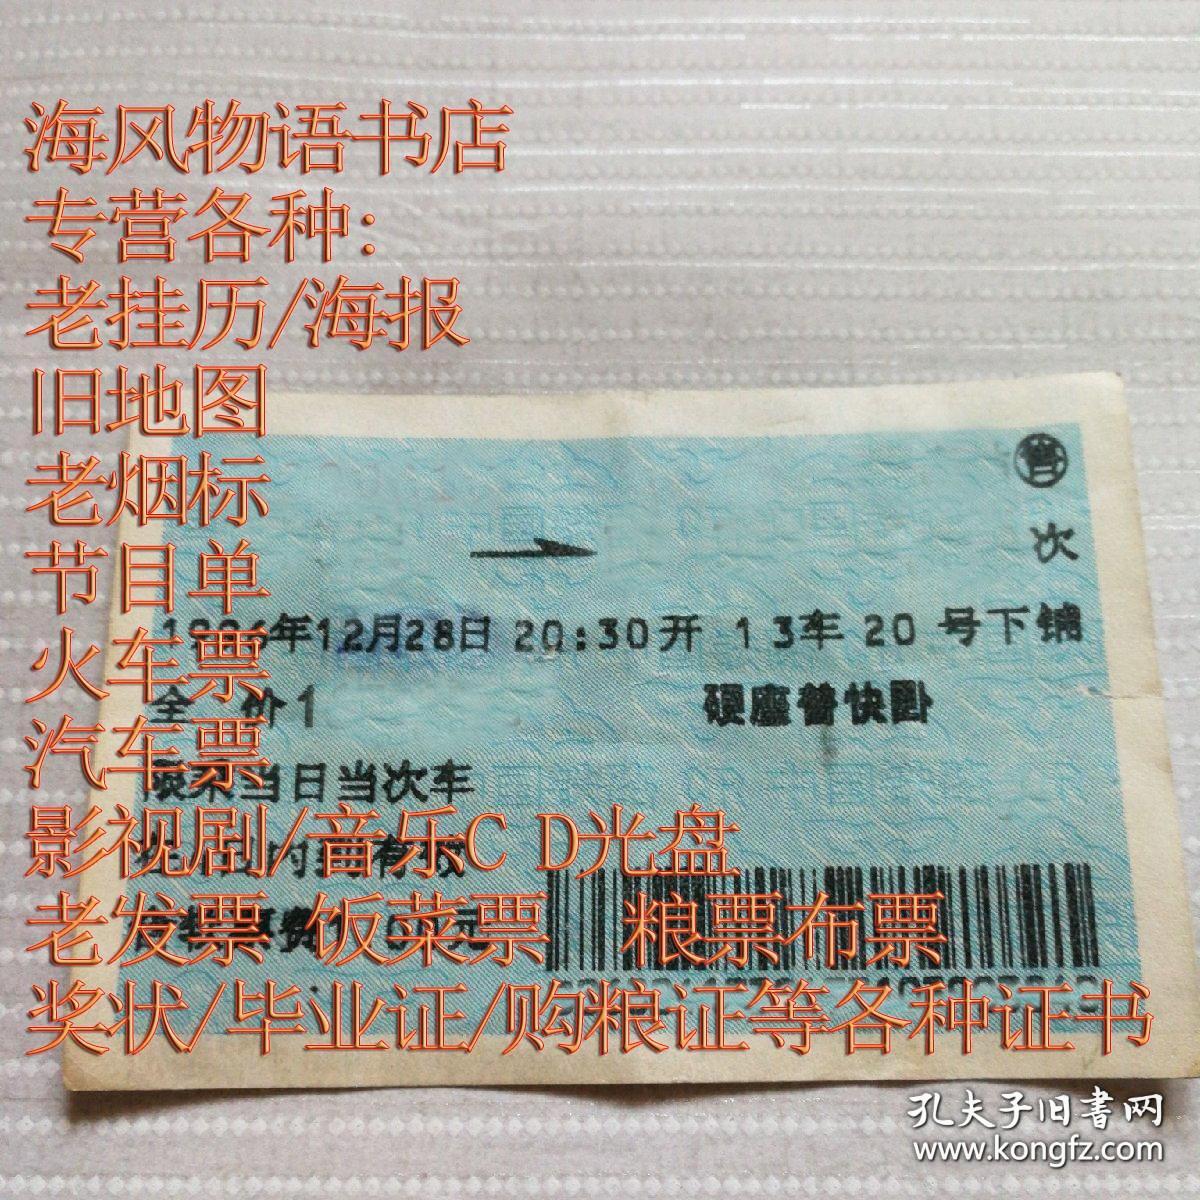 老火车票收藏——上海——179次——柳州（蓝色软纸票）